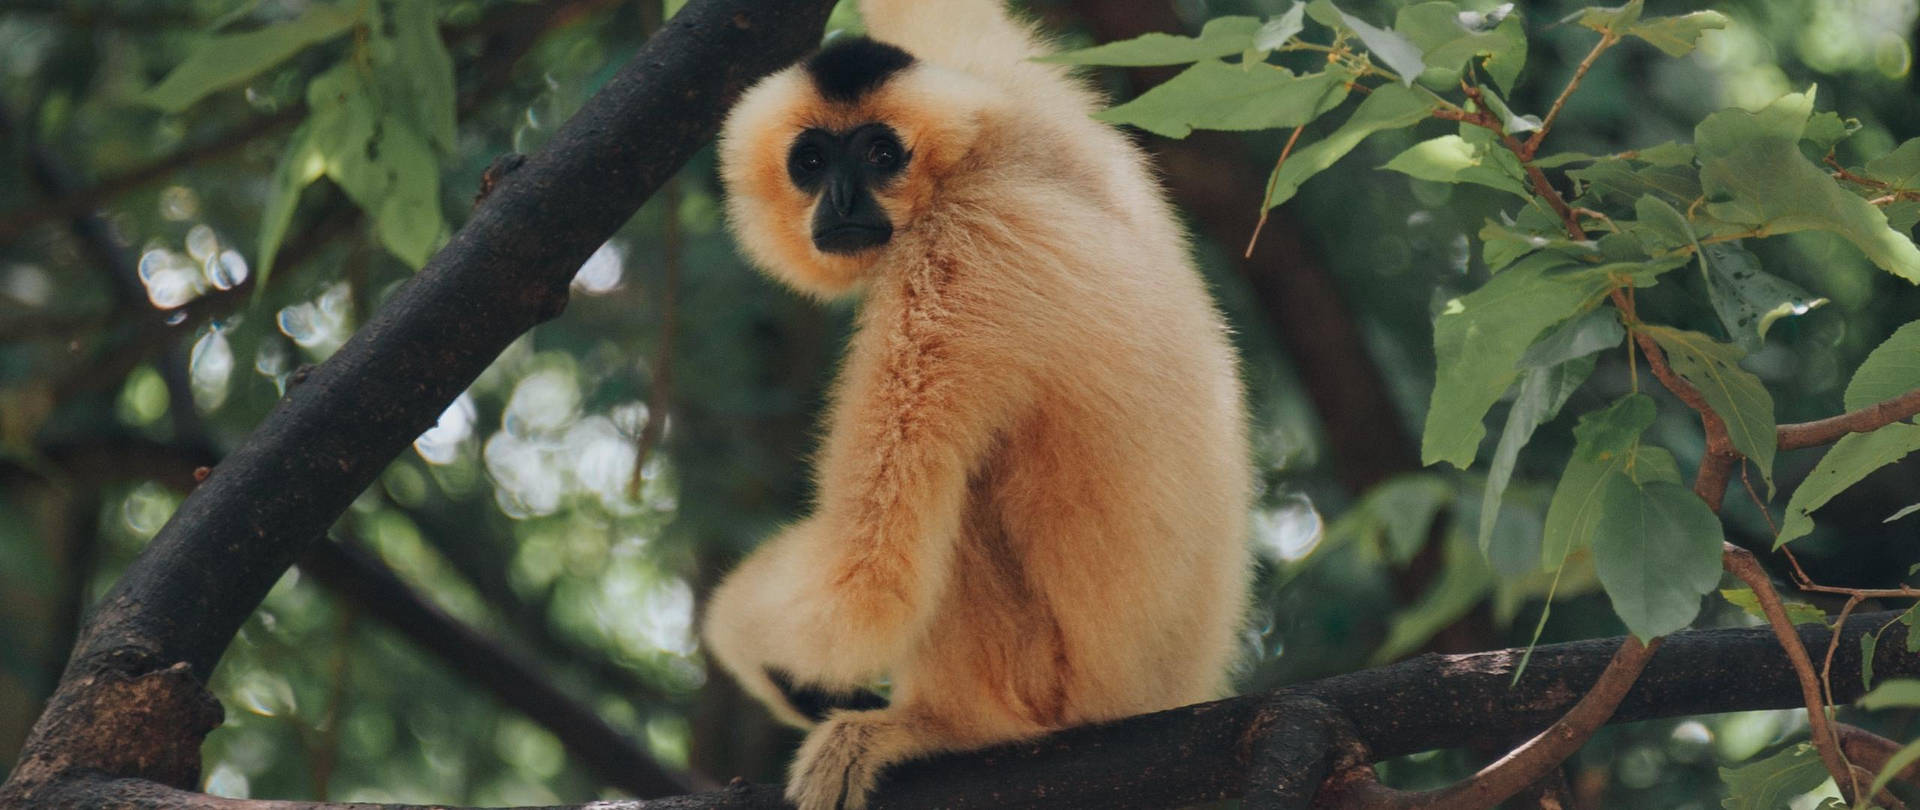 Gibbon Looking At Camera